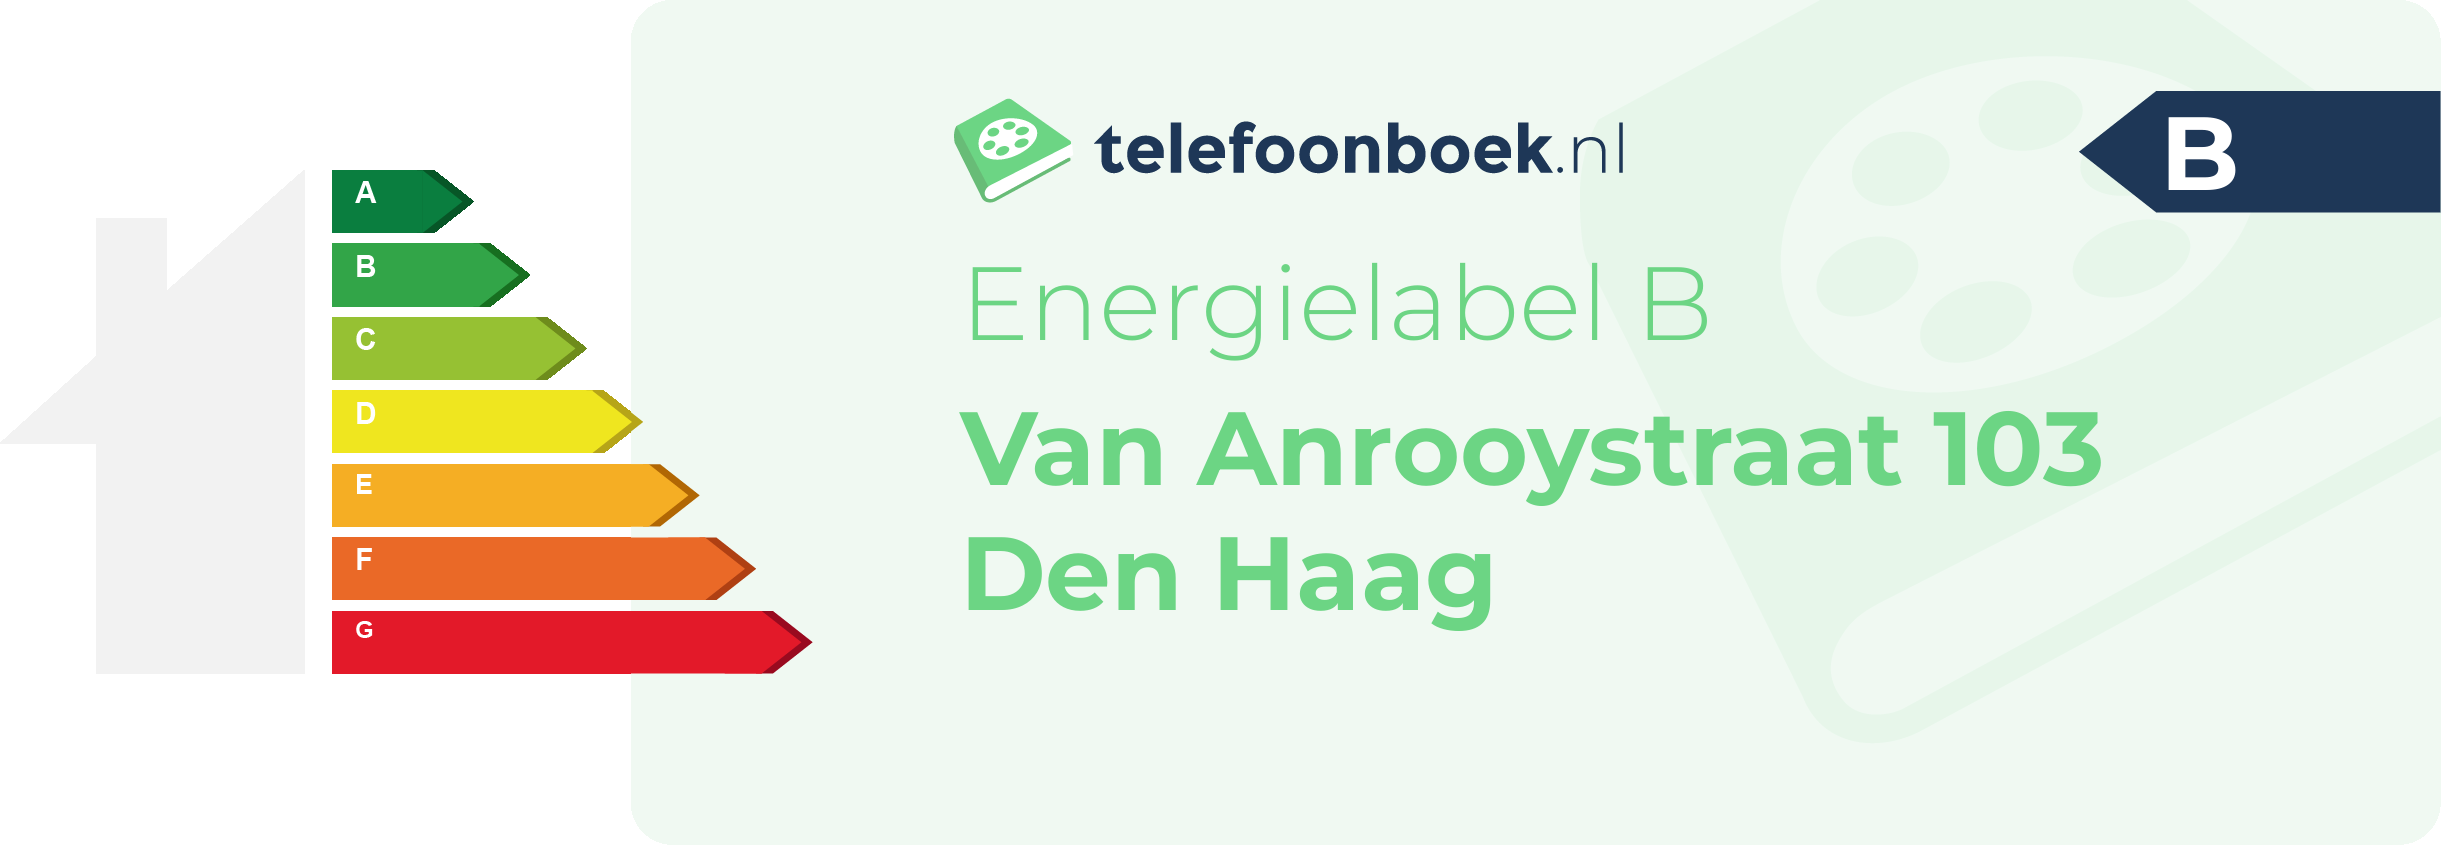 Energielabel Van Anrooystraat 103 Den Haag